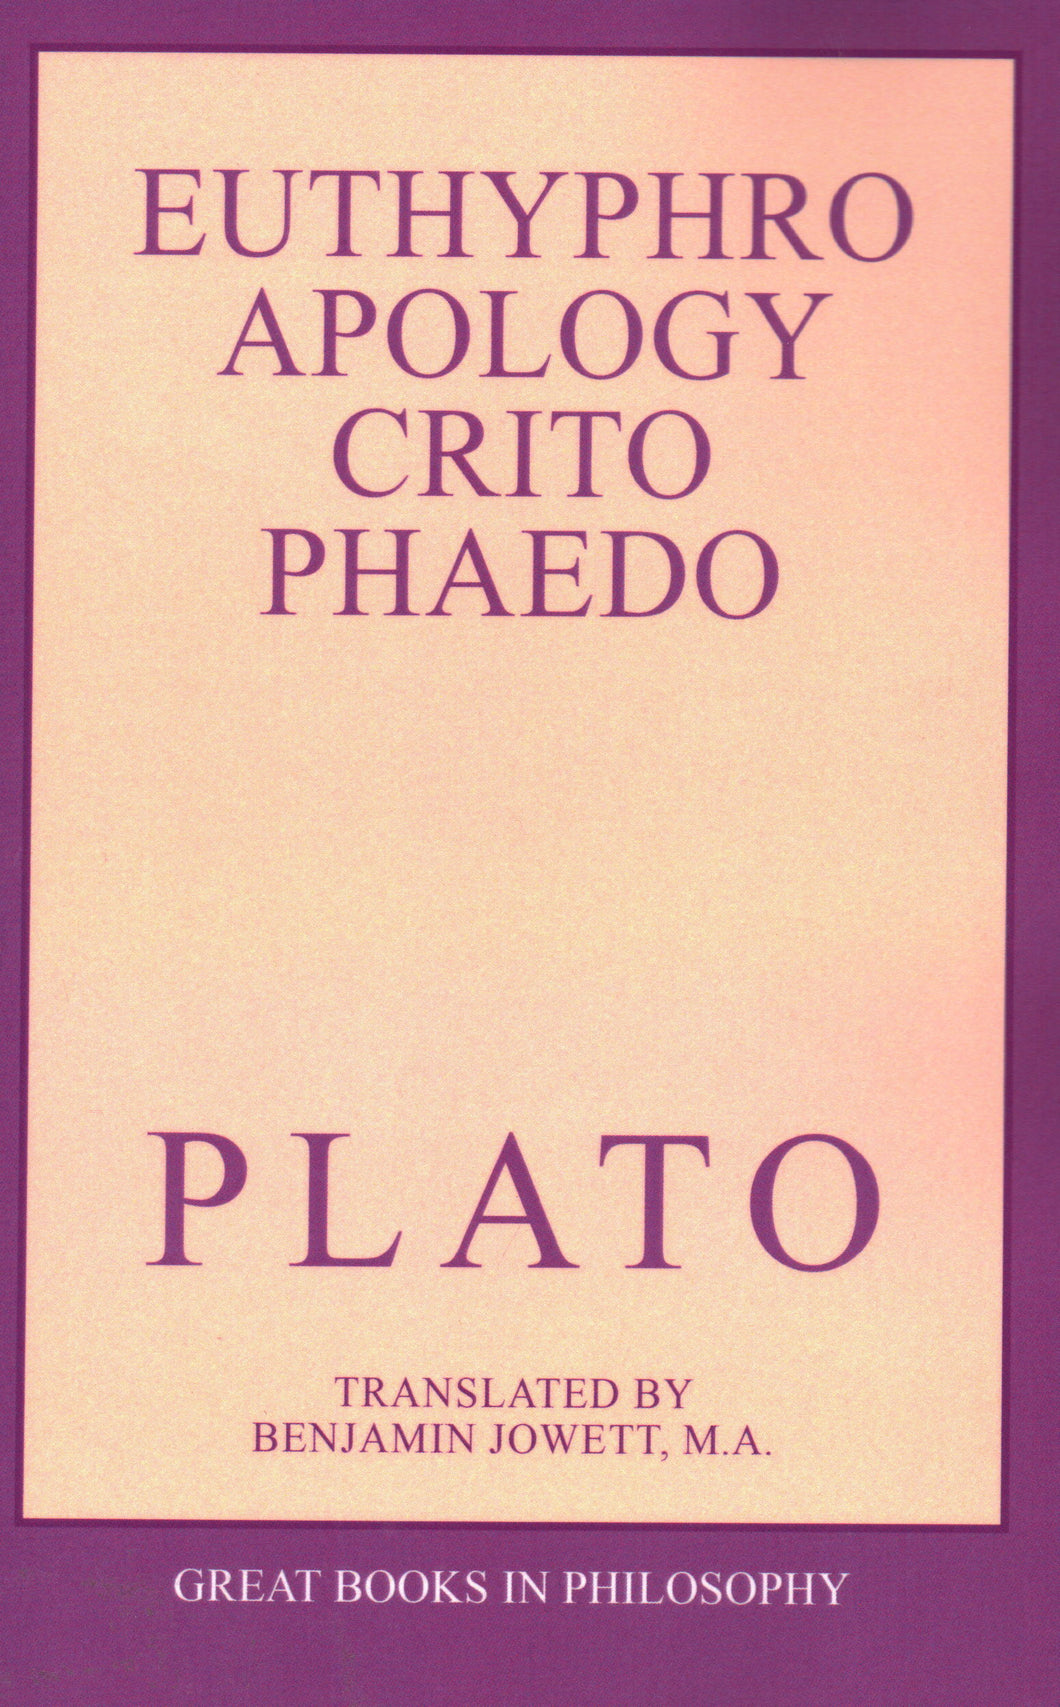 The Euthyphro, Apology, Crito, and Phaedo